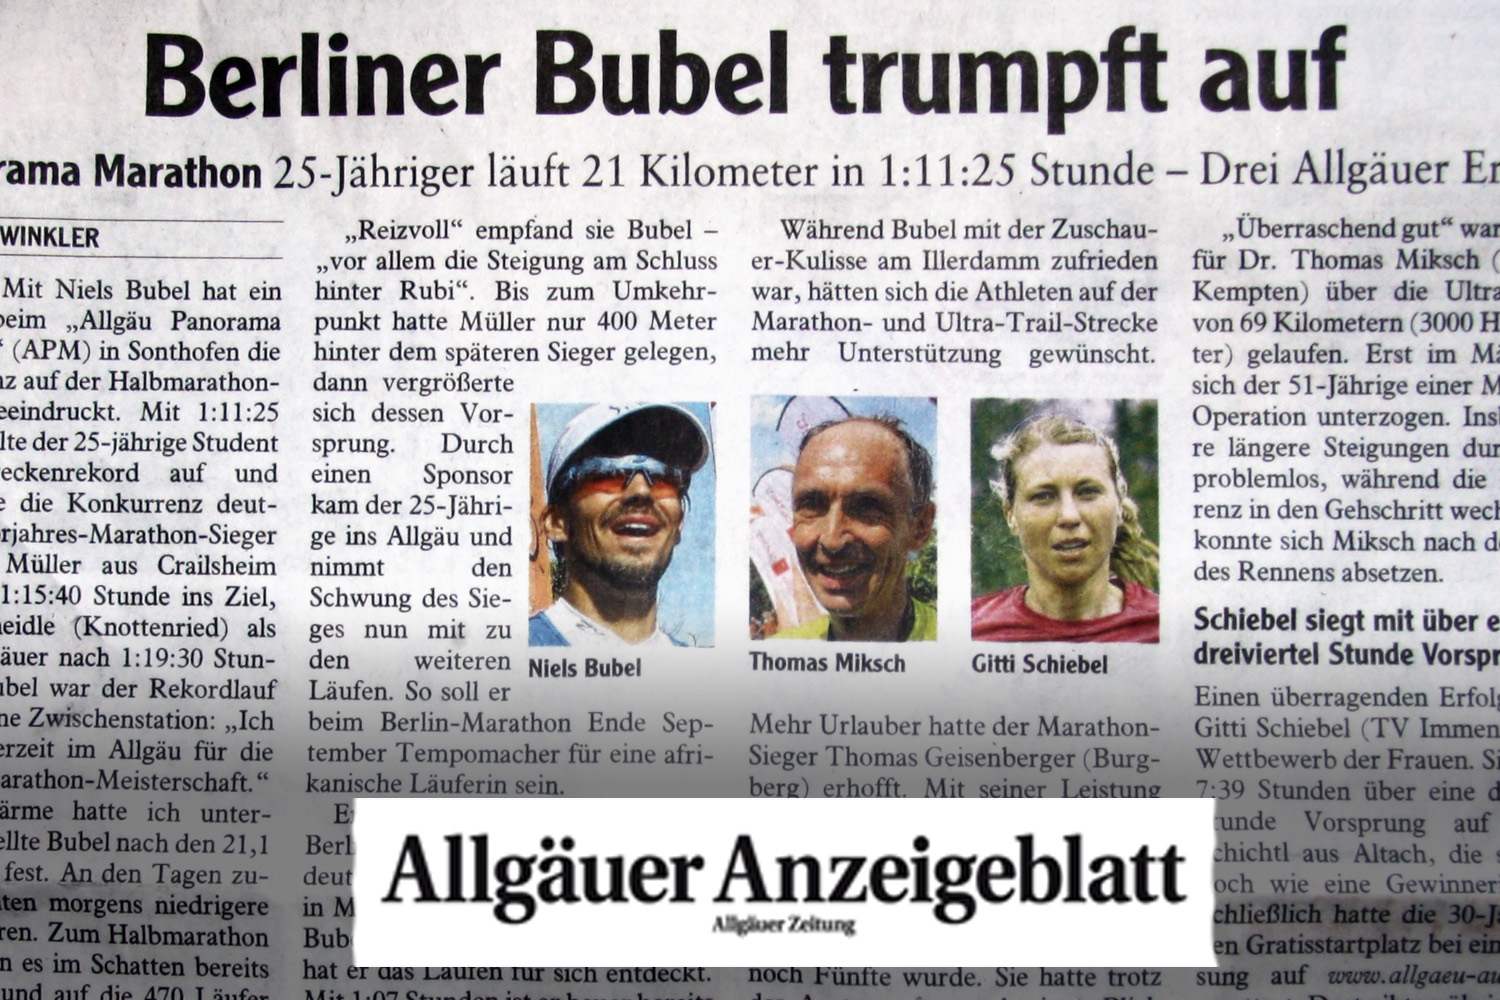 Das Allgäuer Anzeigeblatt schreibt: Berliner Bubel trumpft auf